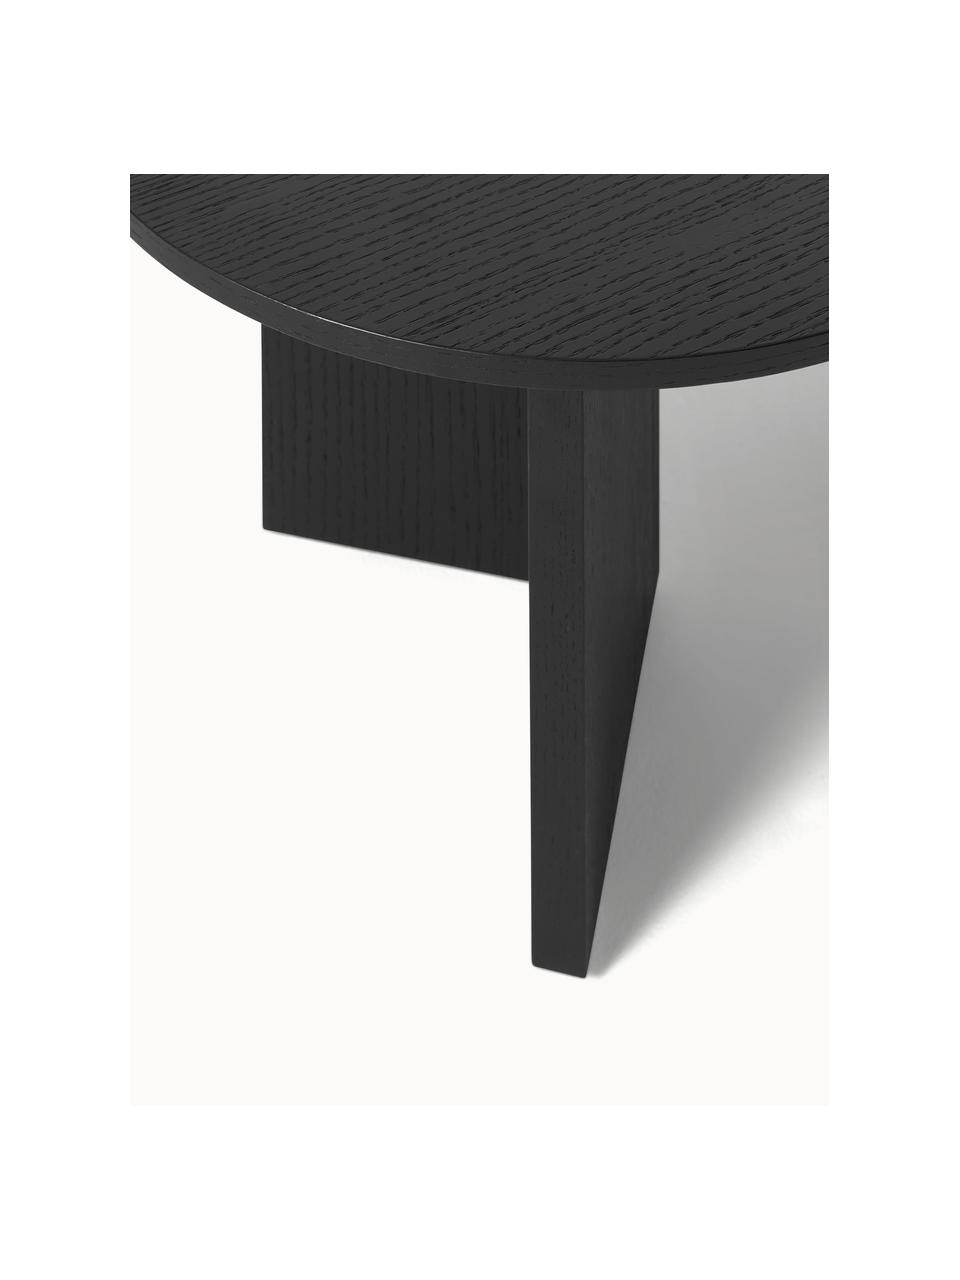 Oválny drevený konferenčný stolík Toni, MDF-doska strednej hustoty s dyhou z orechového dreva, lakované

Tento produkt je vyrobený z trvalo udržateľného dreva s certifikátom FSC®., Čierna, Š 100 x D 55 cm